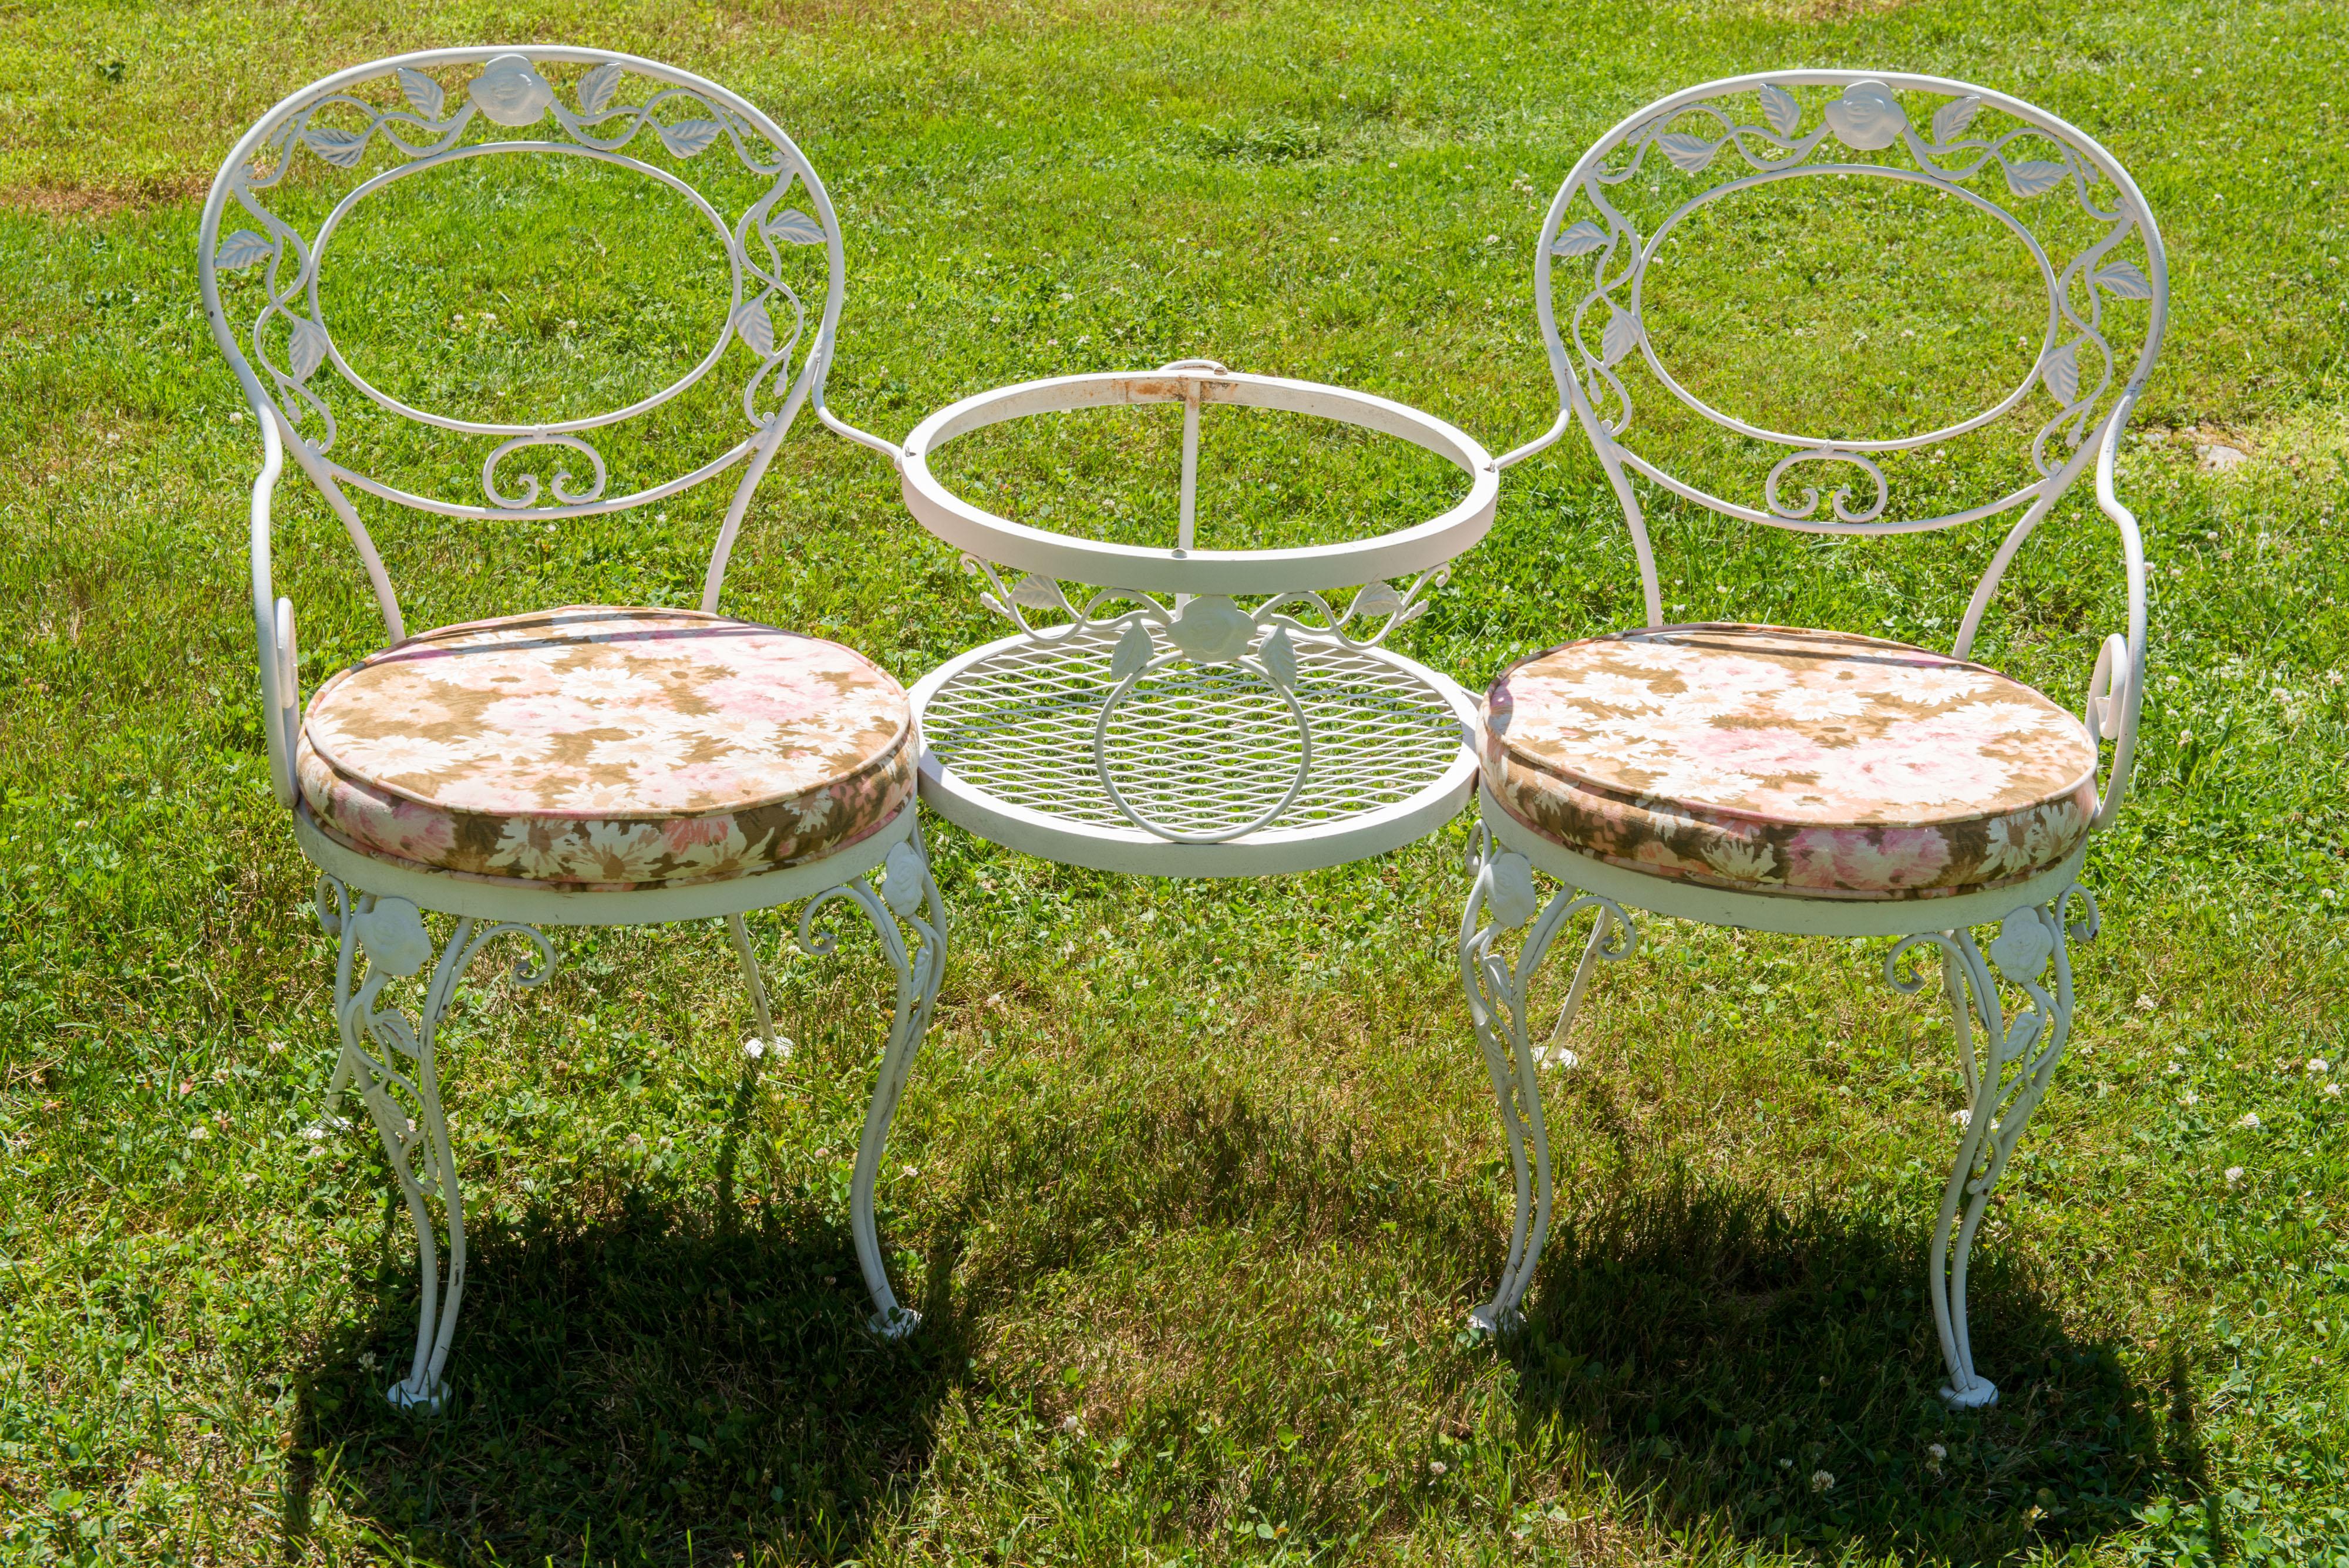 Il s'agit d'un tete a tete classique en fer forge Chantilly Rose de Woodard - une paire de chaises à accoudoirs attachées avec une petite table ronde en verre entre elles. À l'arrière de la table, deux anneaux en fer permettent d'accueillir un